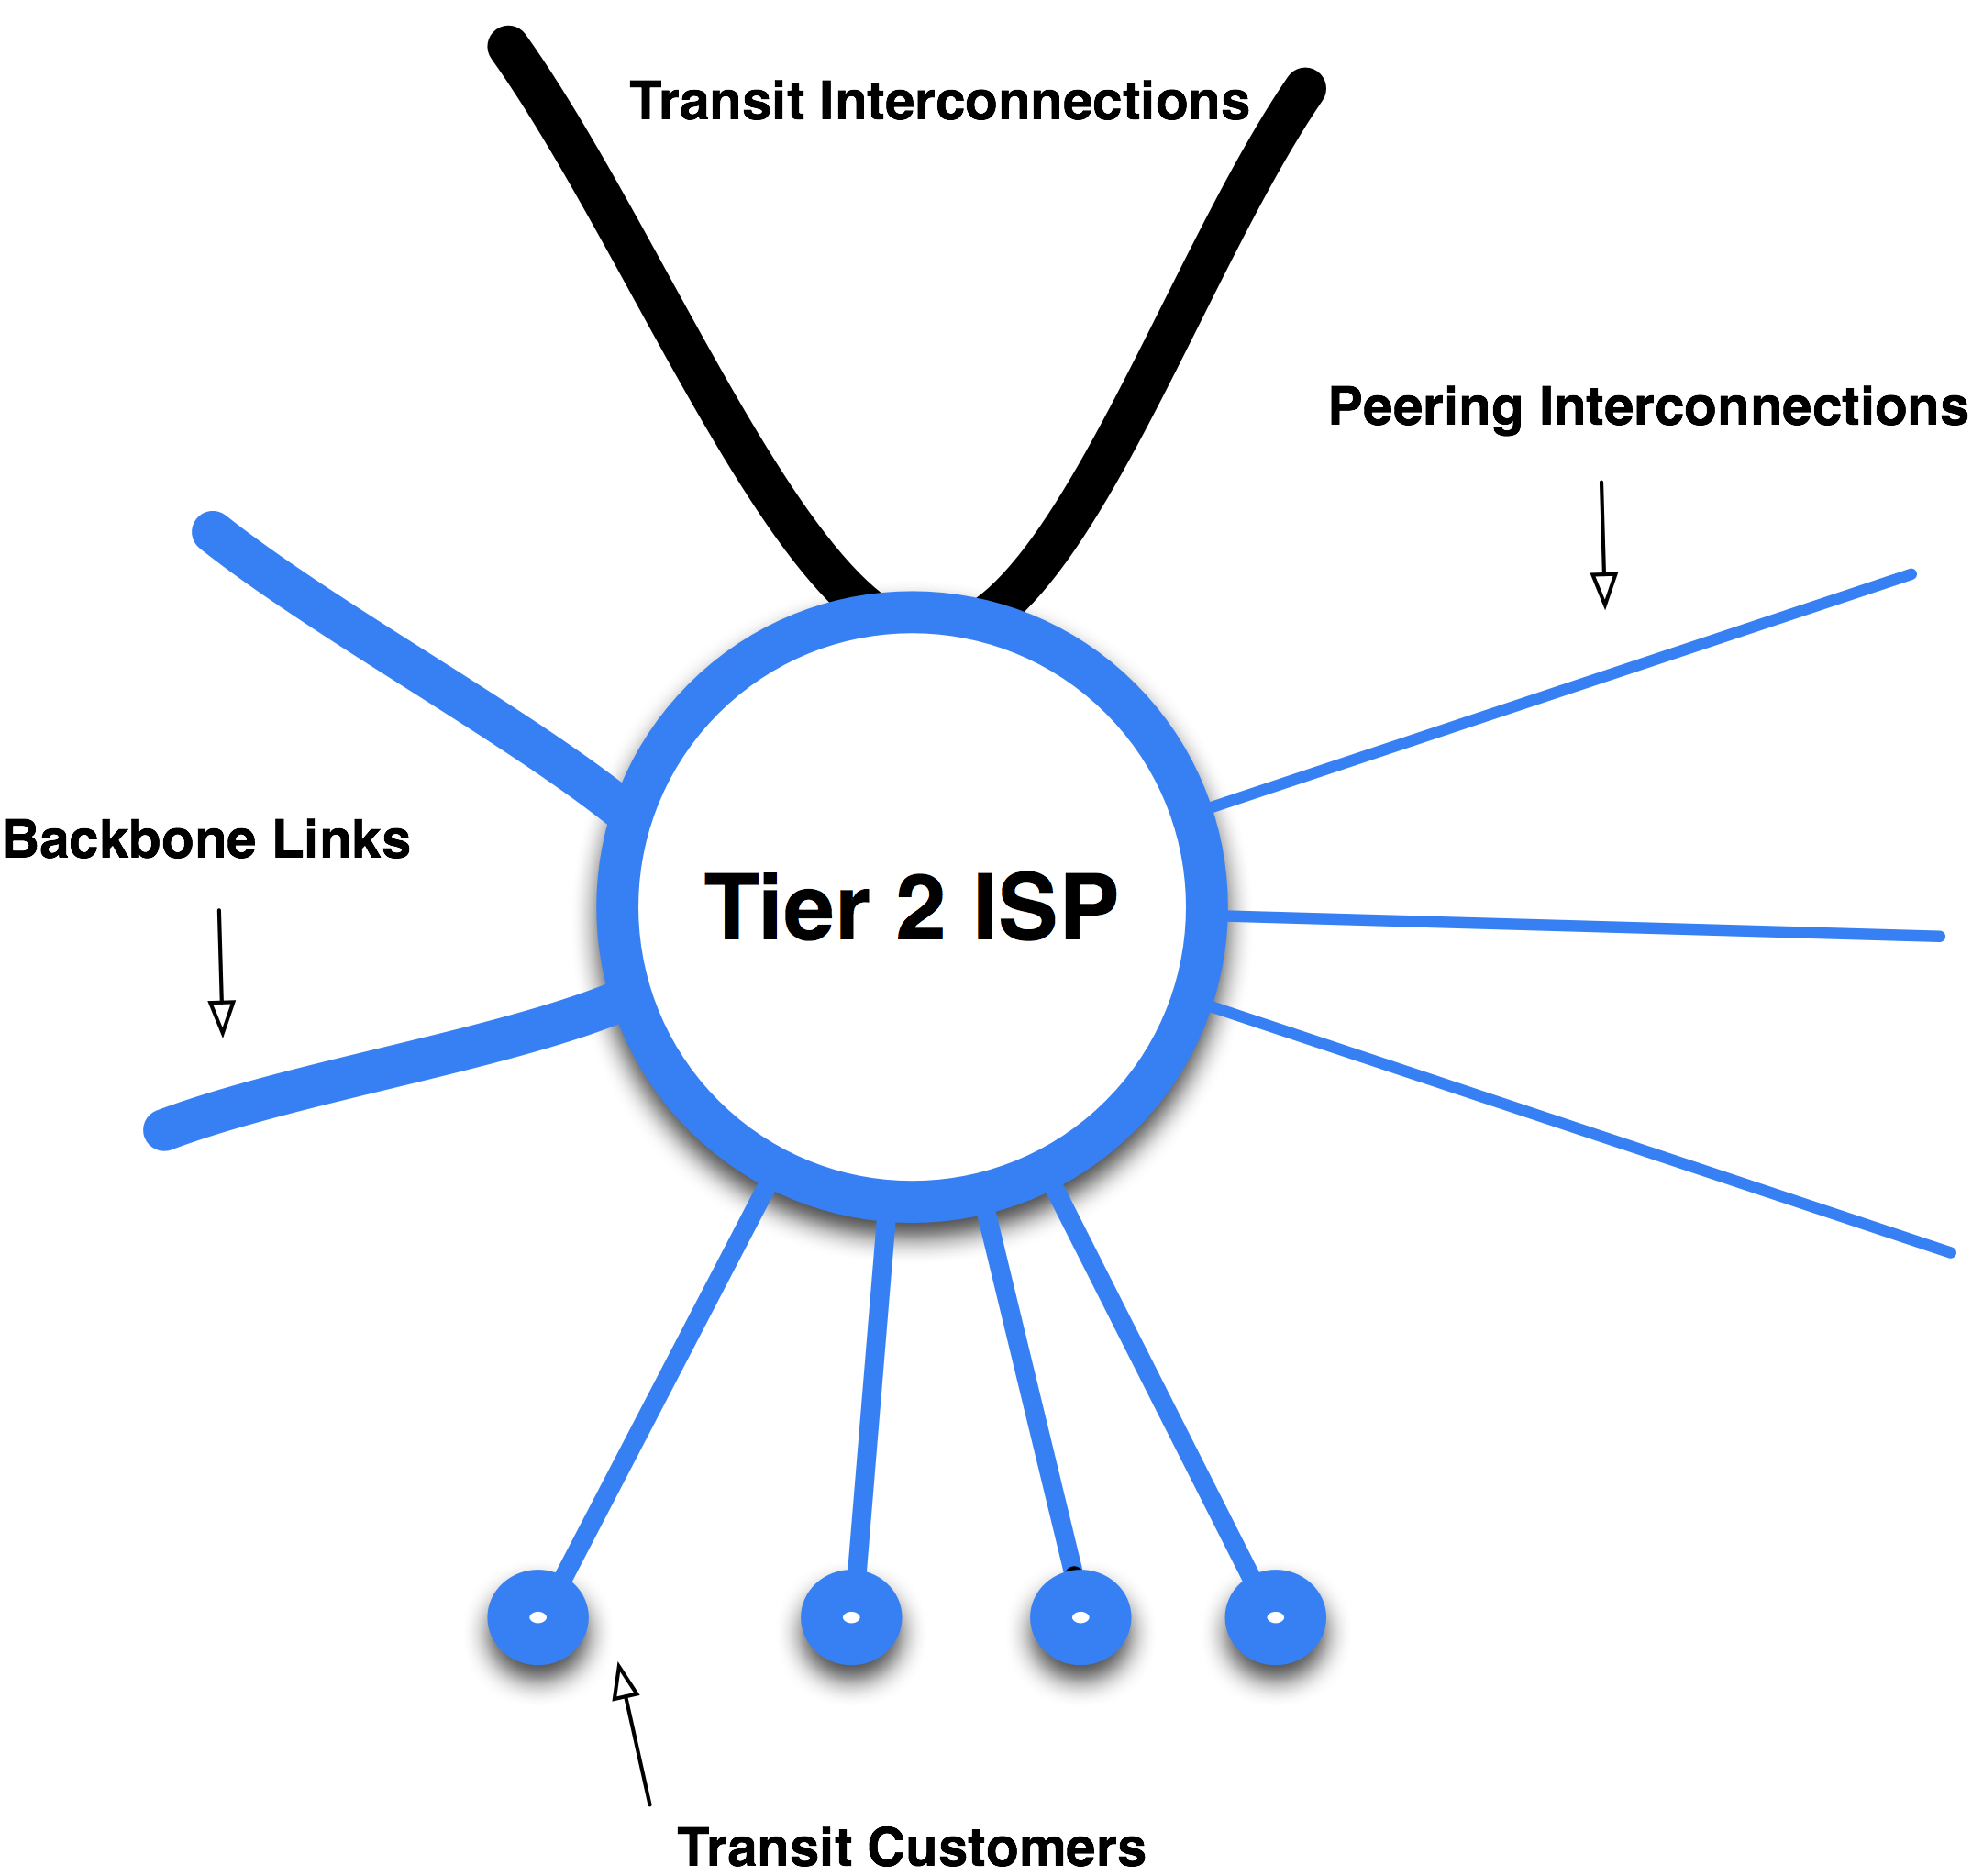 Tier 2 ISP